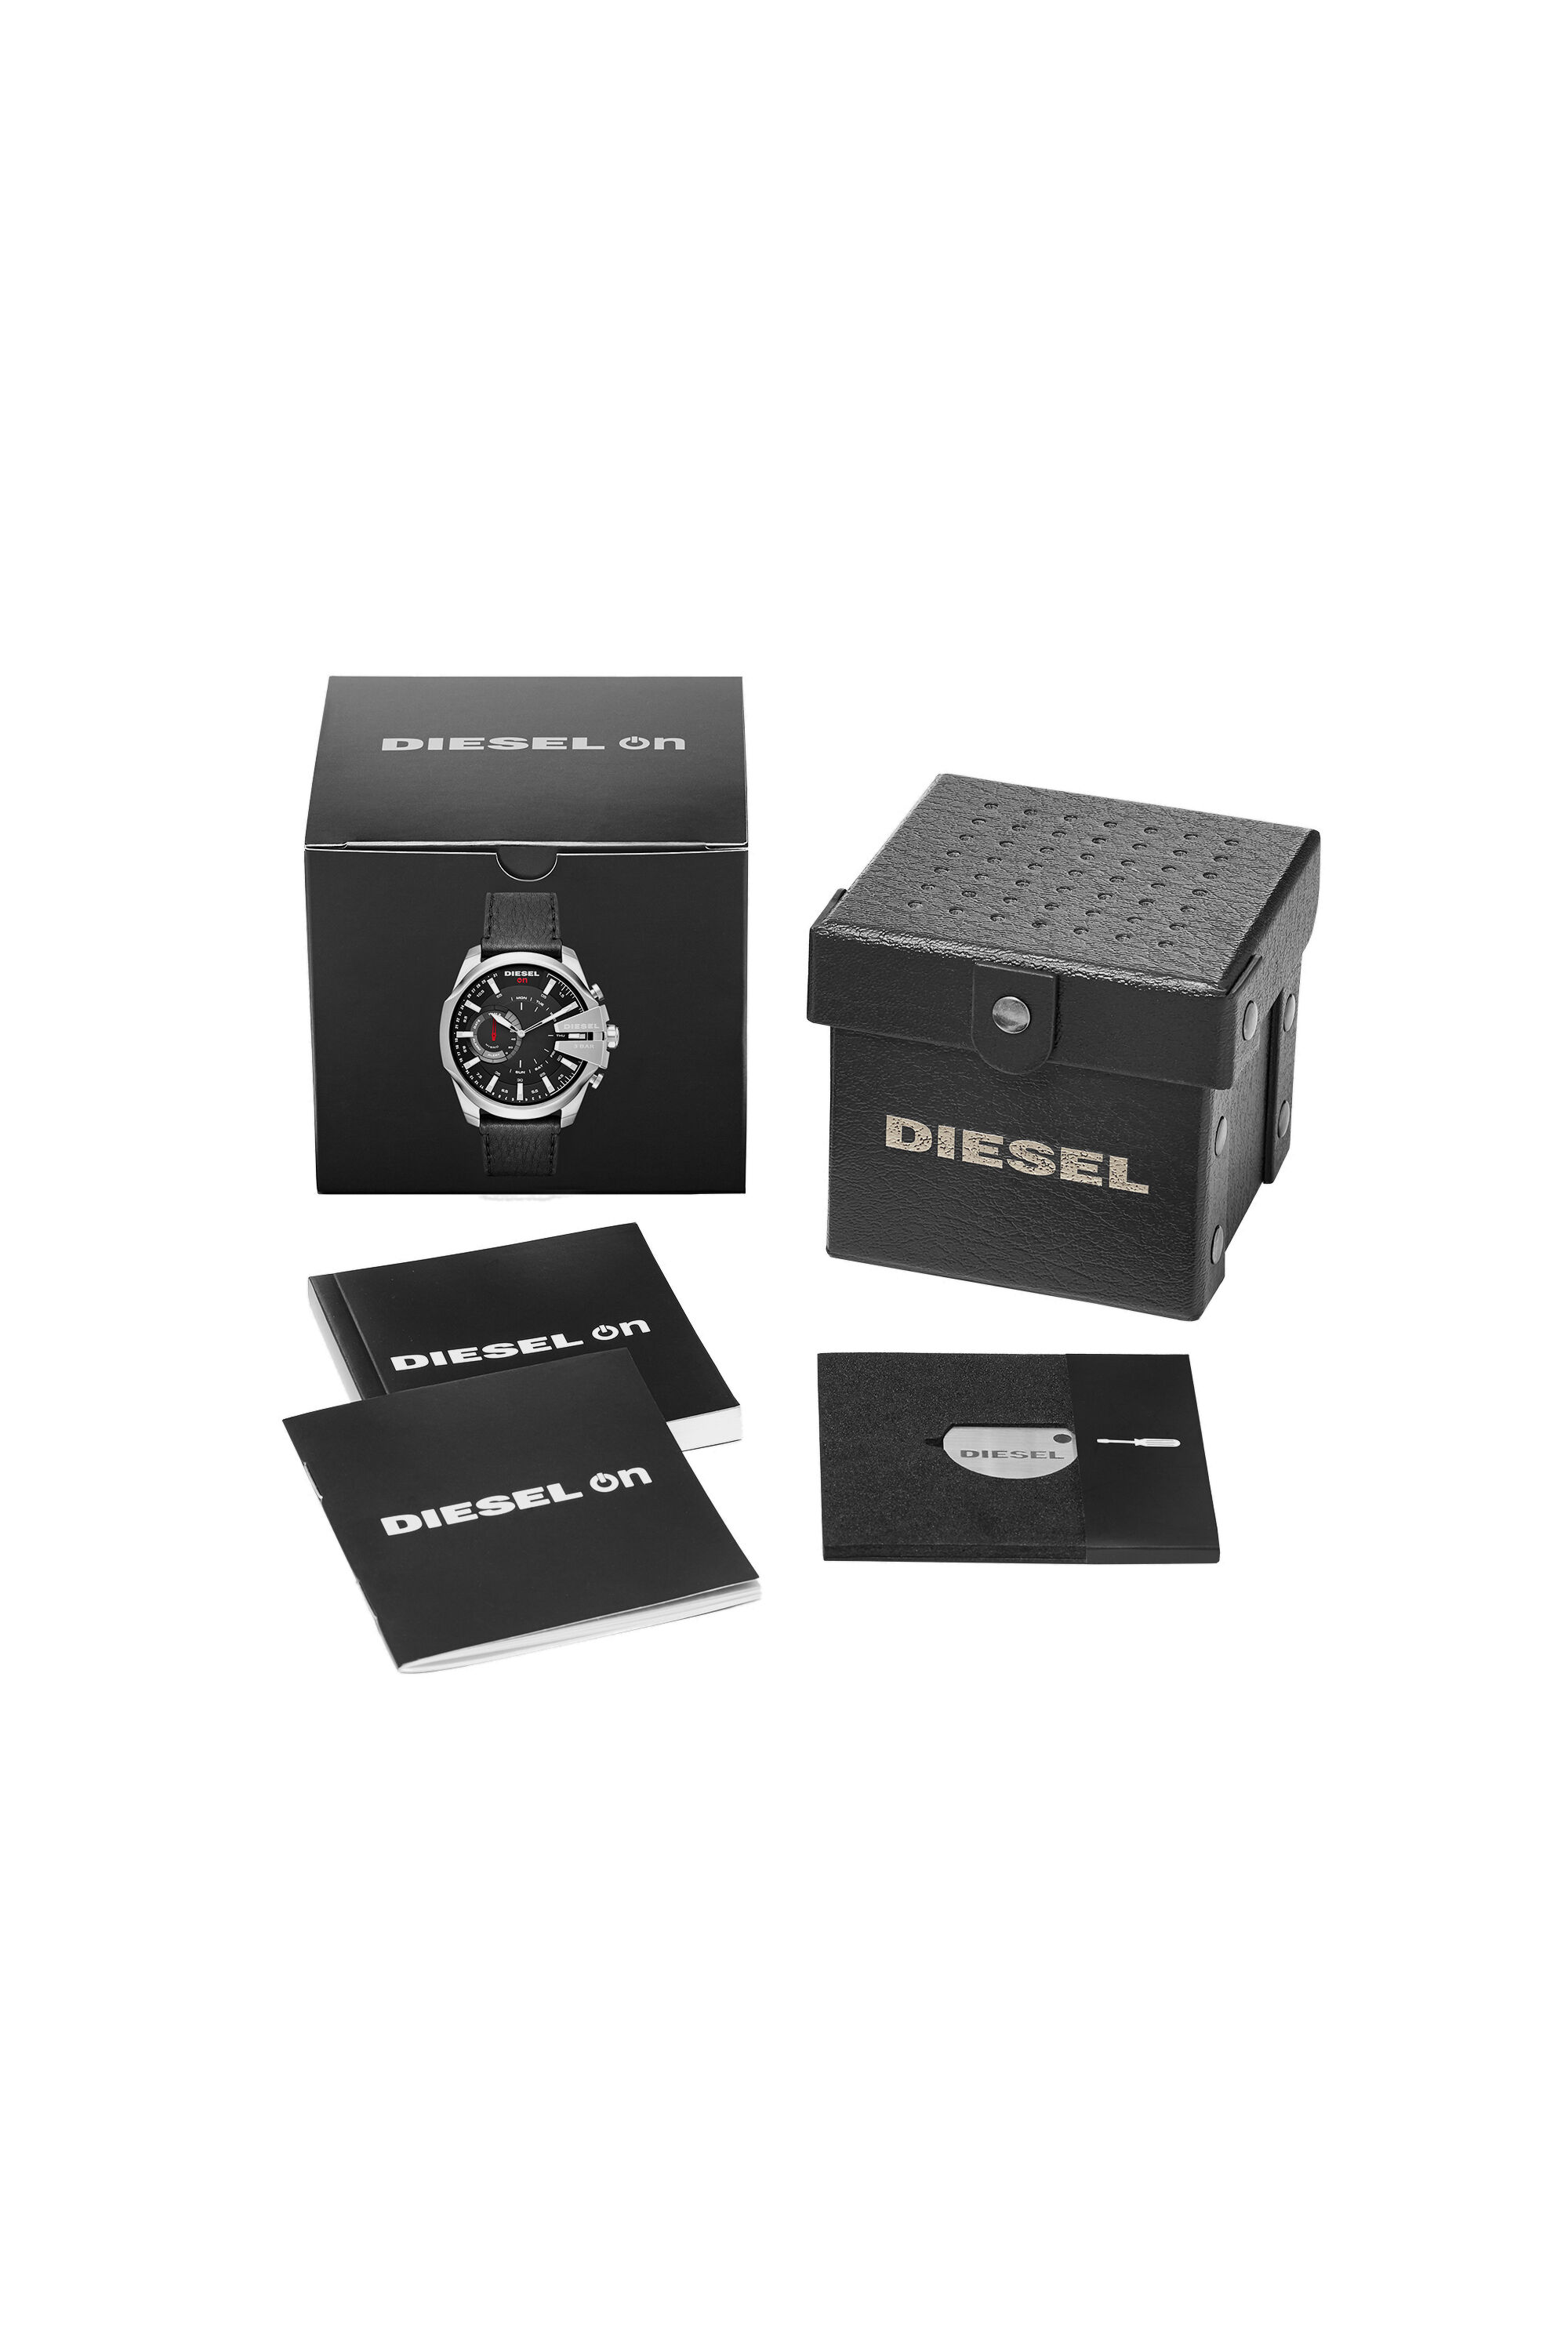 Diesel - DT1010,  - Image 5